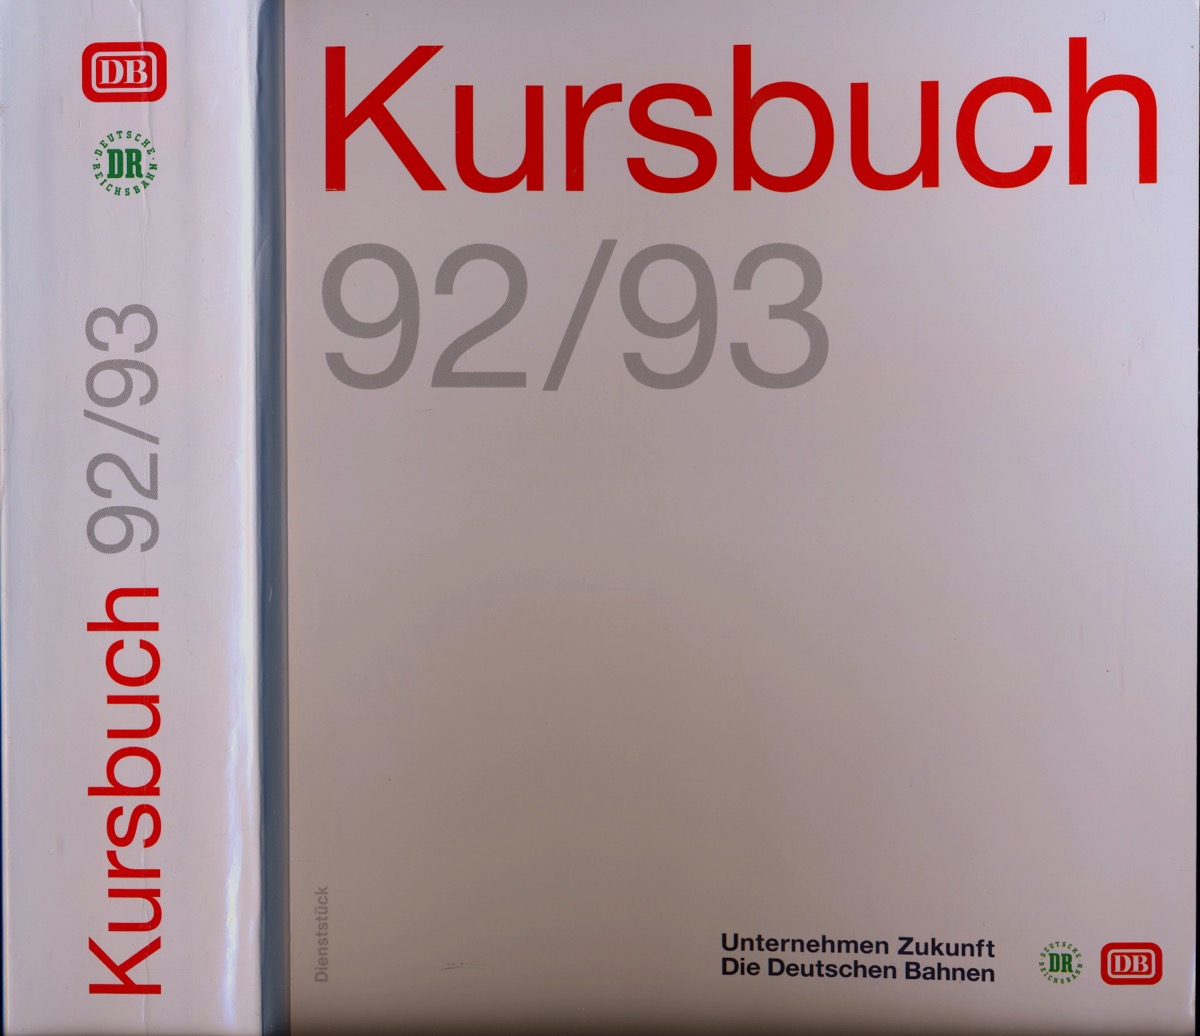 Deutsche Bahn AG  Deutsche Bahn: Kursbuch 1992/93, gültig vom 31.05.1992 bis 22.05.1993. 